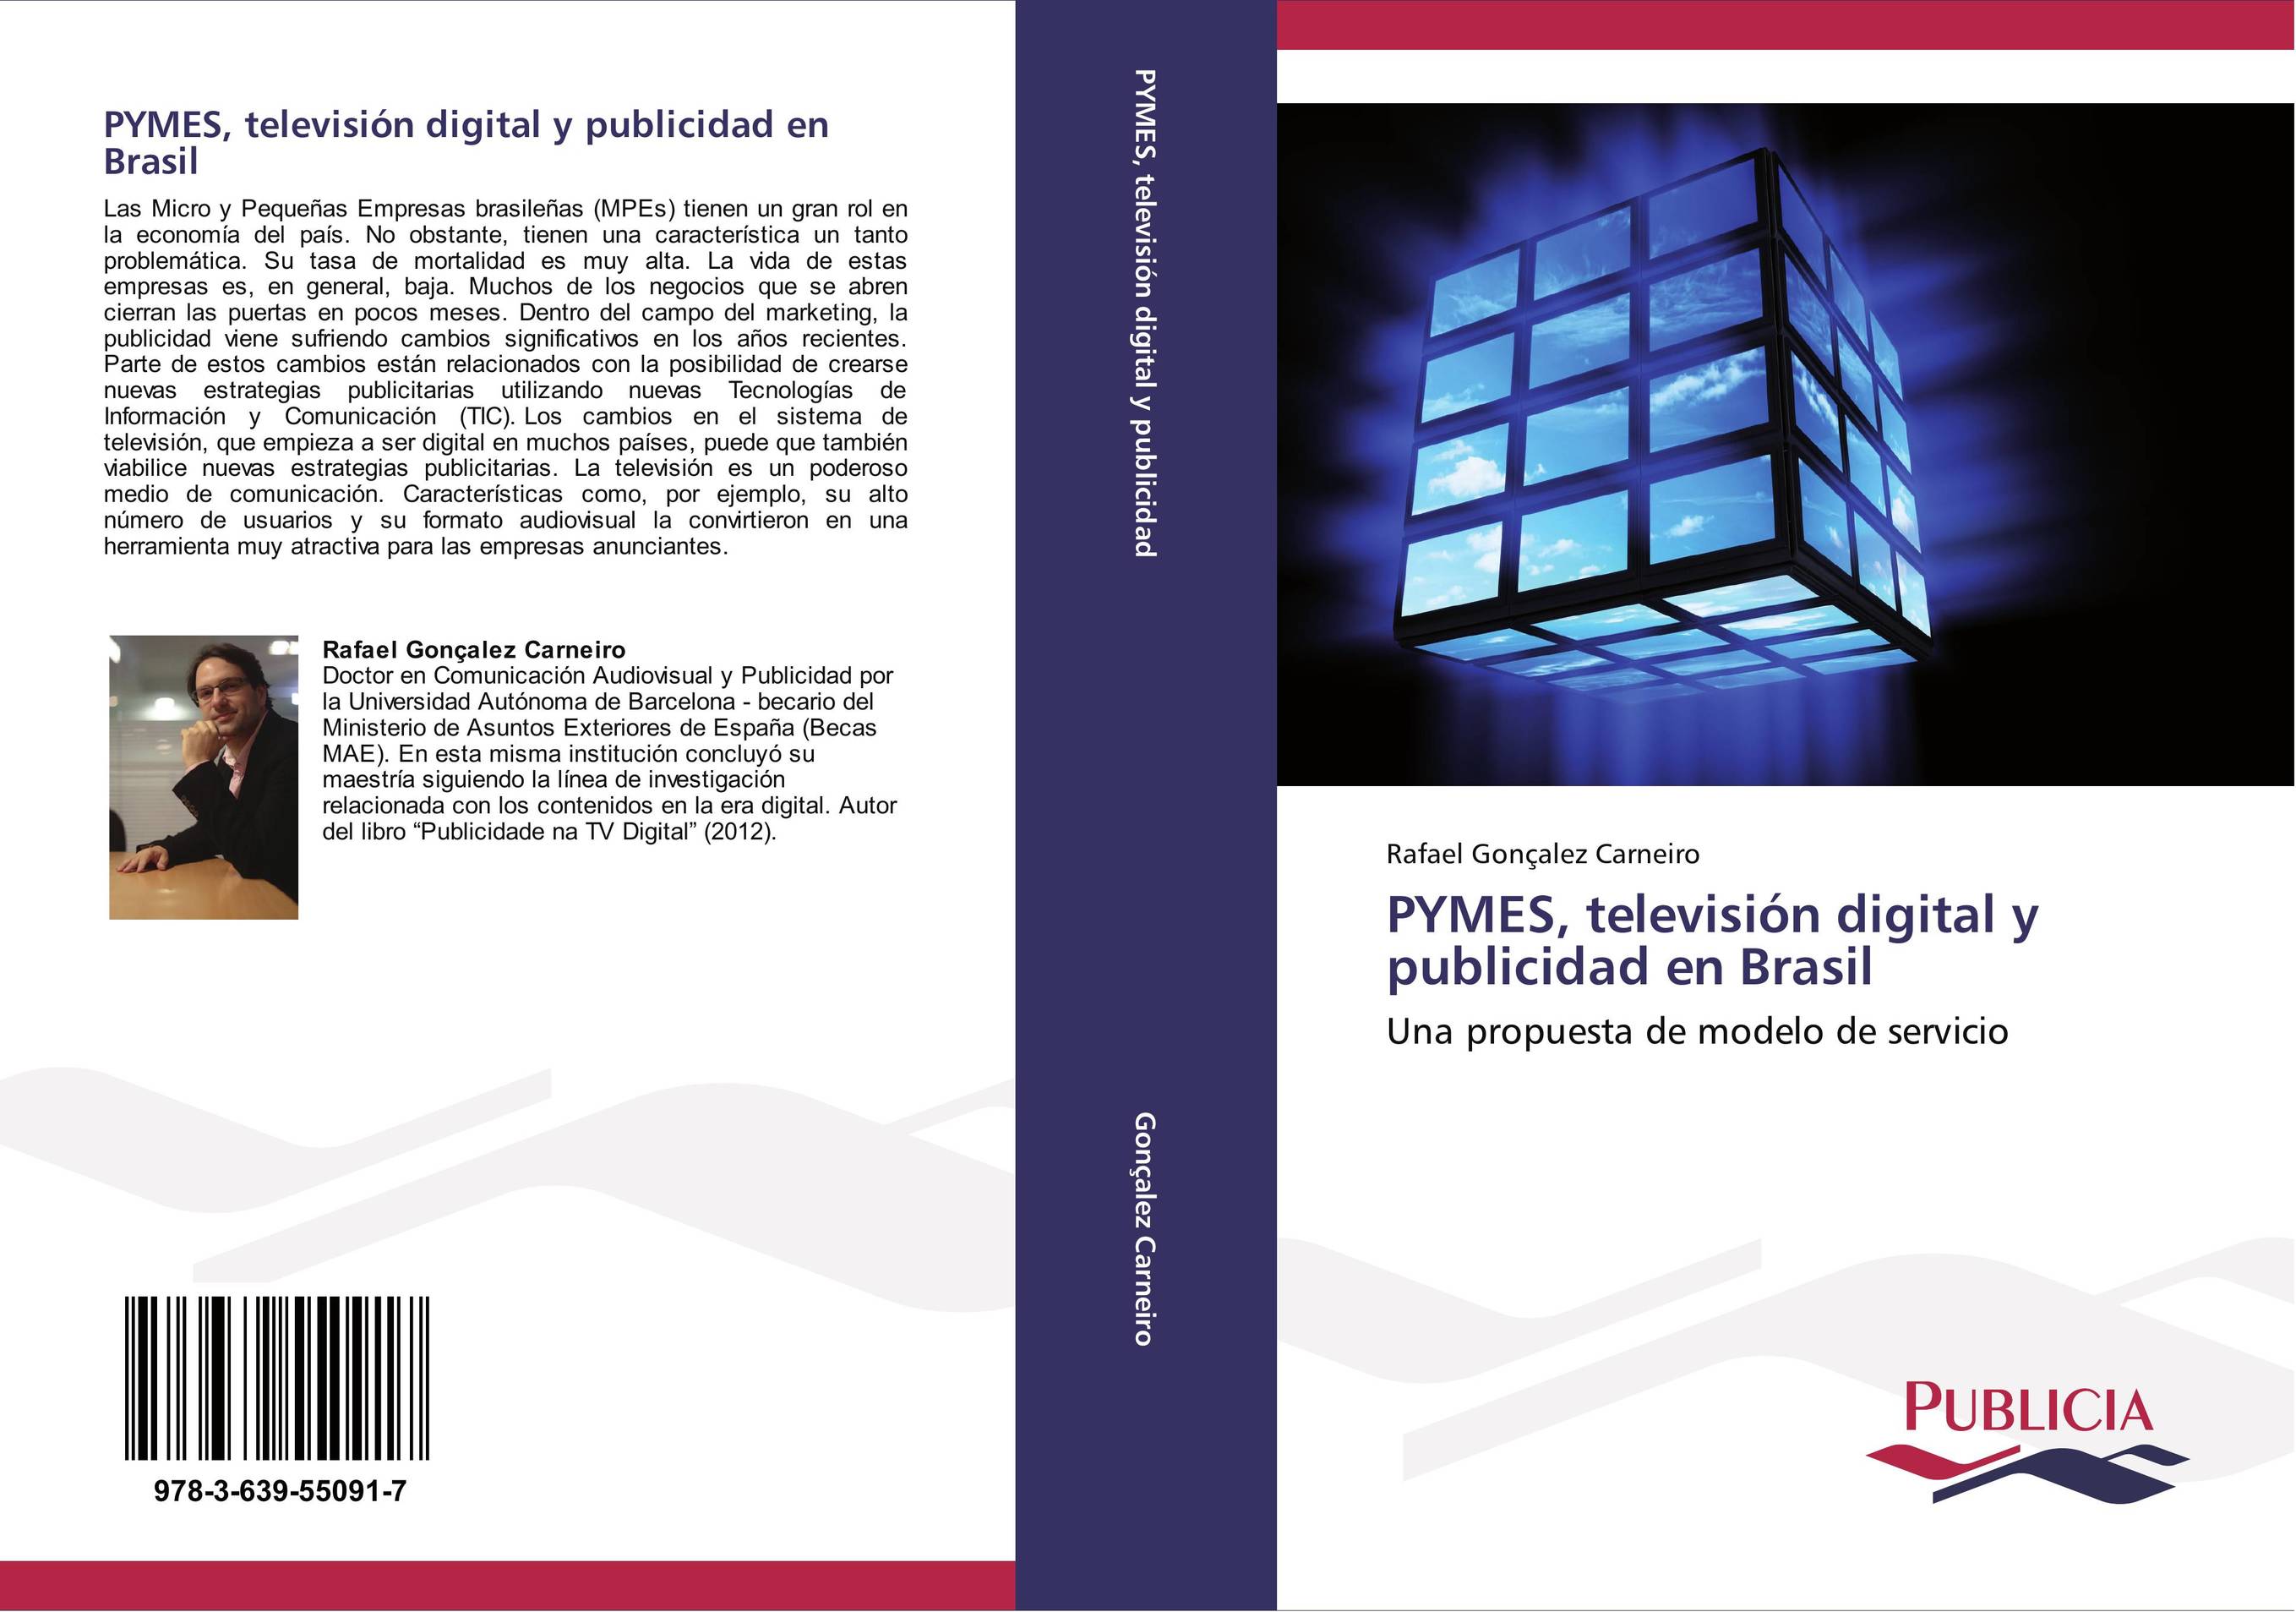 PYMES, televisión digital y publicidad en Brasil